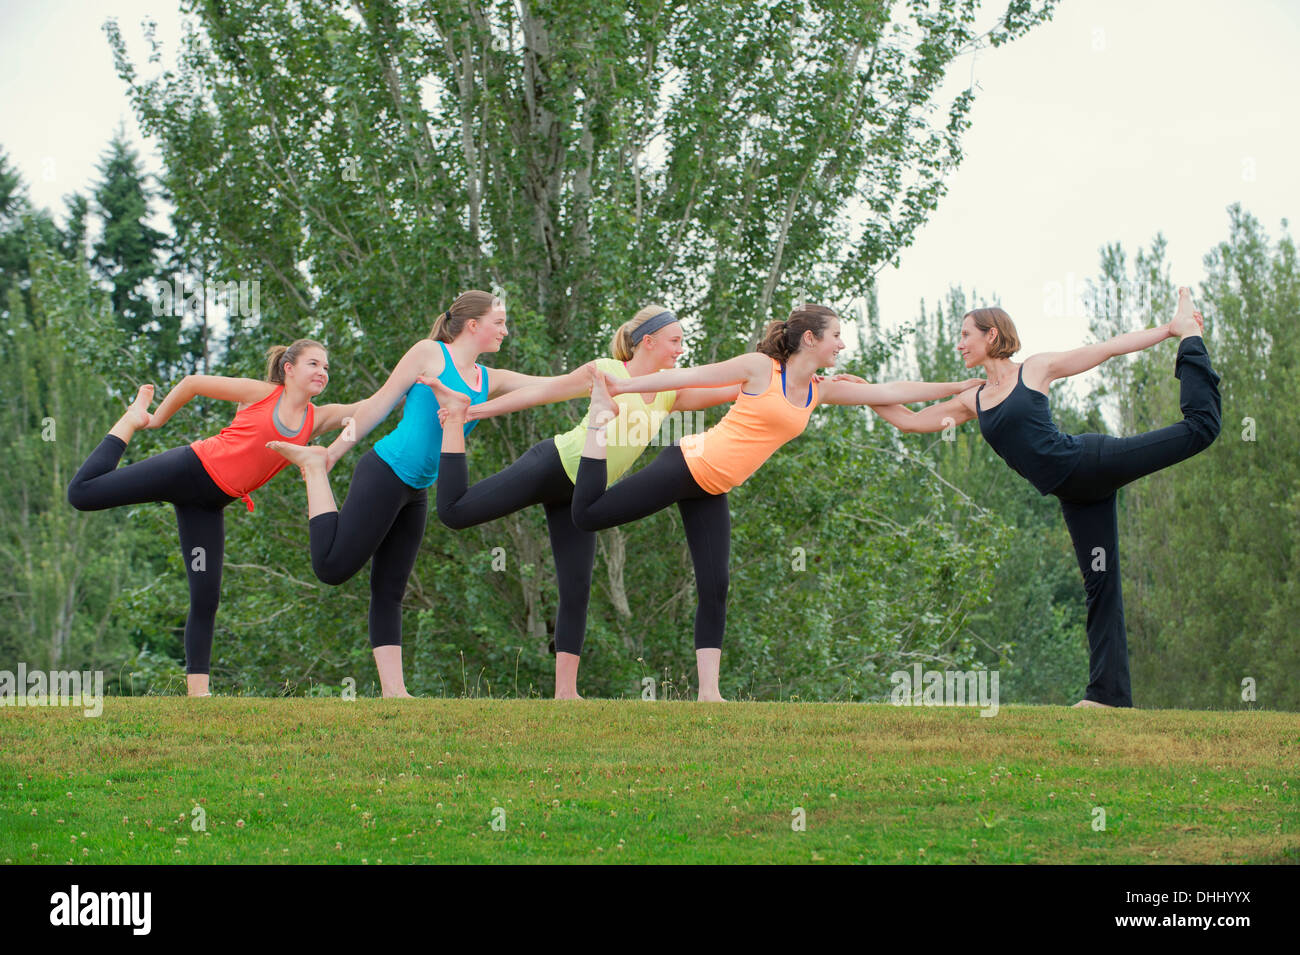 Les adolescentes et le yoga tutor debout sur une jambe Banque D'Images